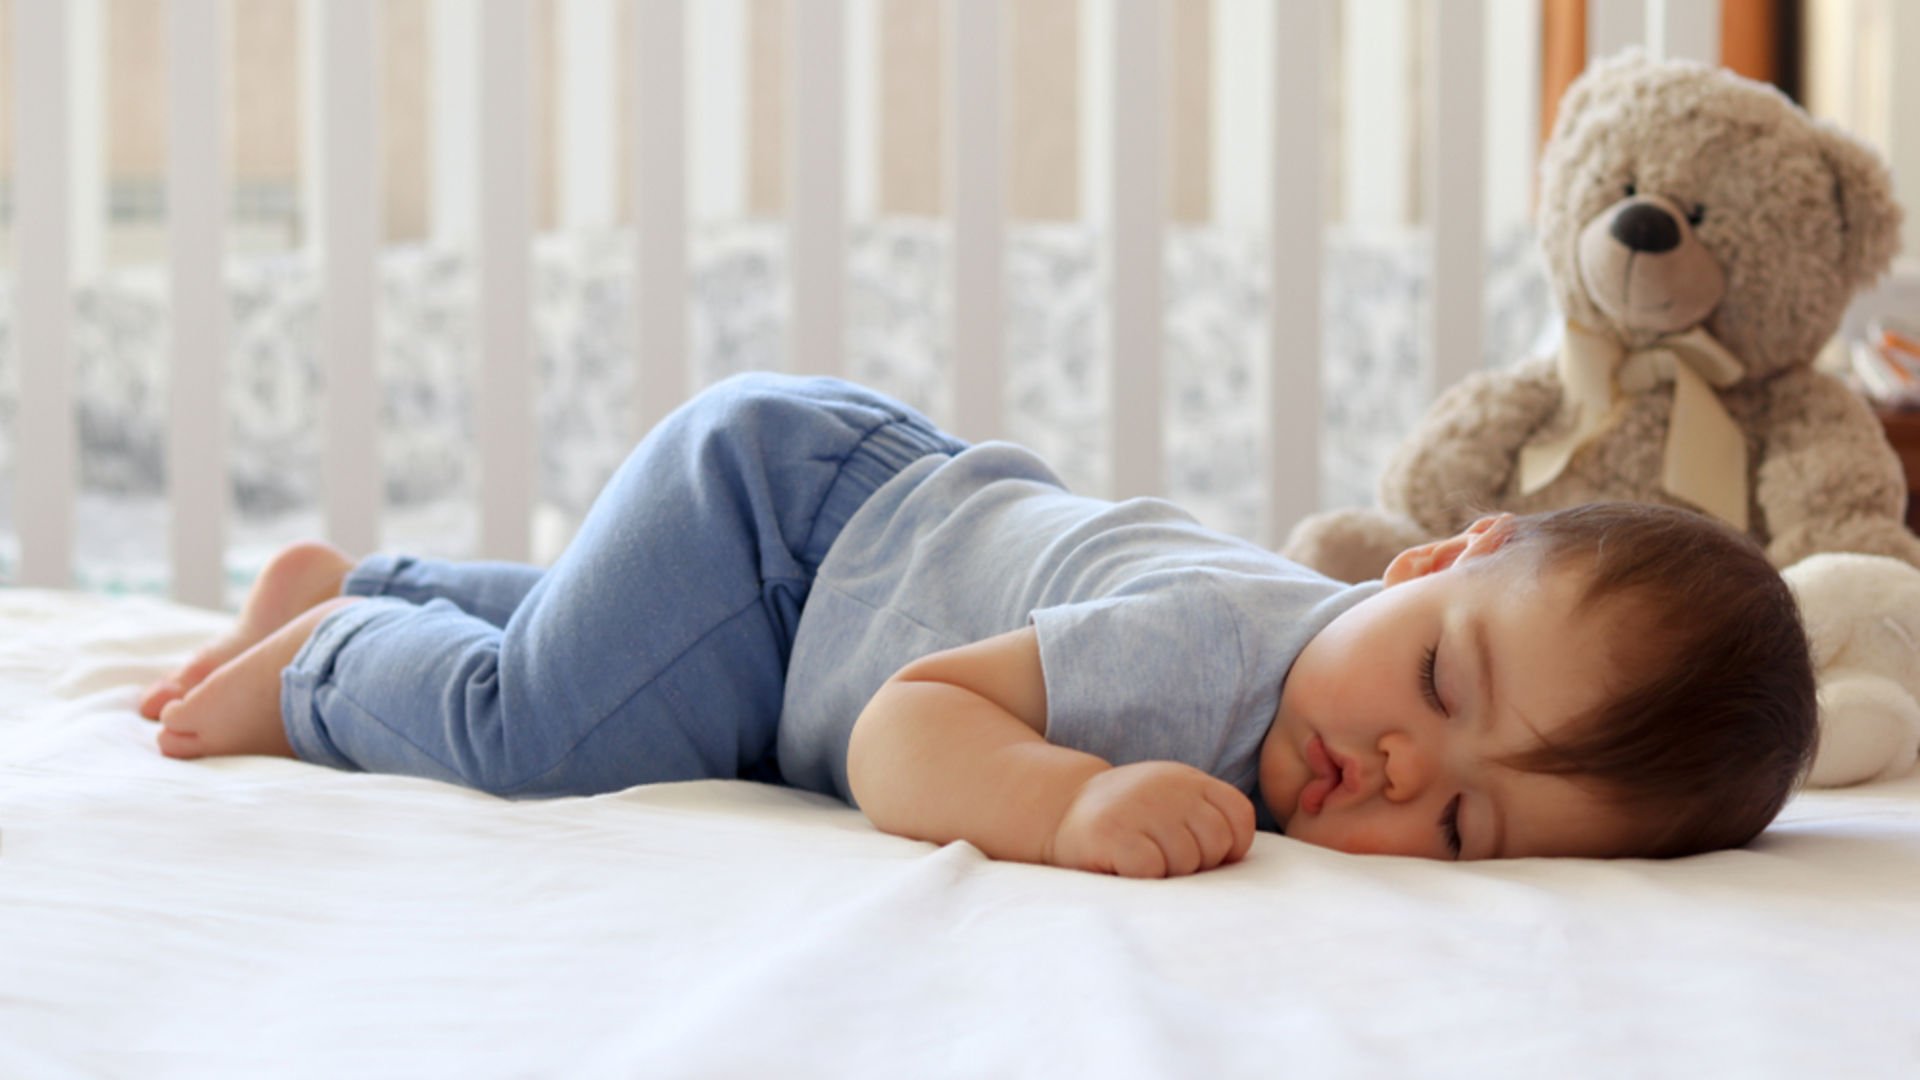 Bilim insanları ağlayan bebeği uyutmanın formülünü buldu